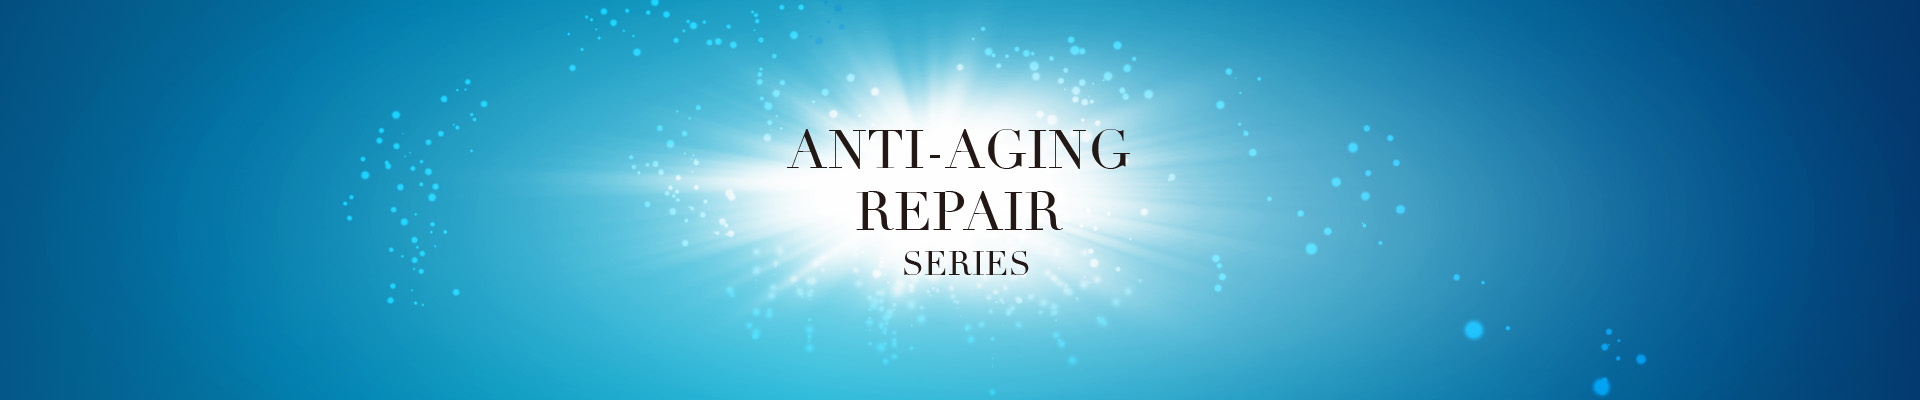 Anti-aging Repair Series